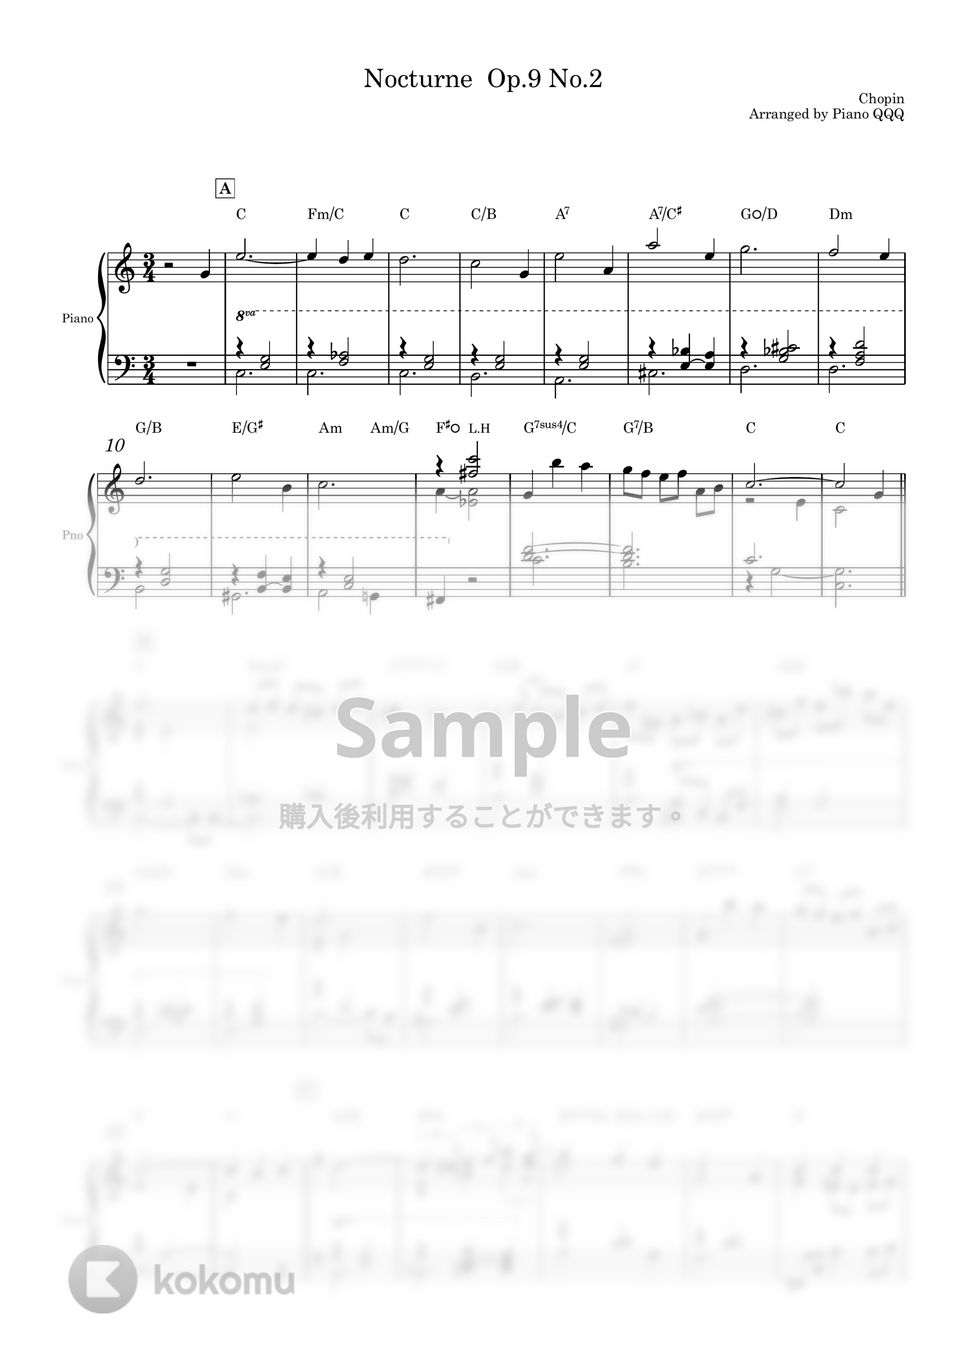 ショパン - ノクターン Op.9 No.2 (ピアノソロ用楽譜) by Piano QQQ